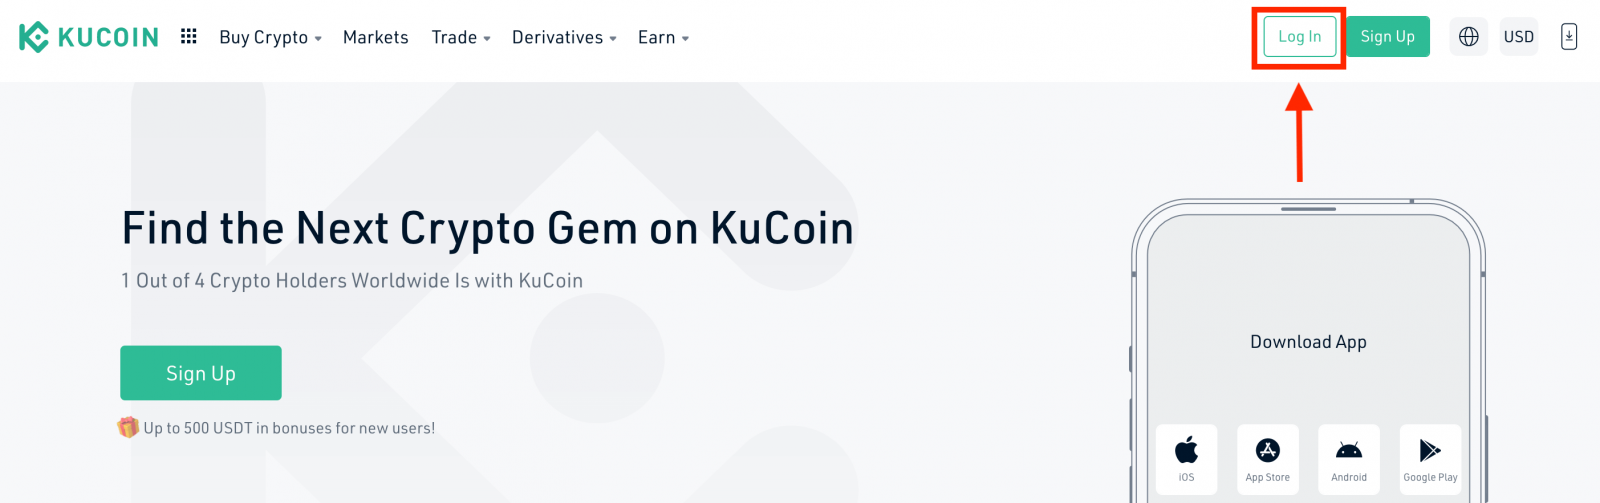 如何开户并登录 KuCoin